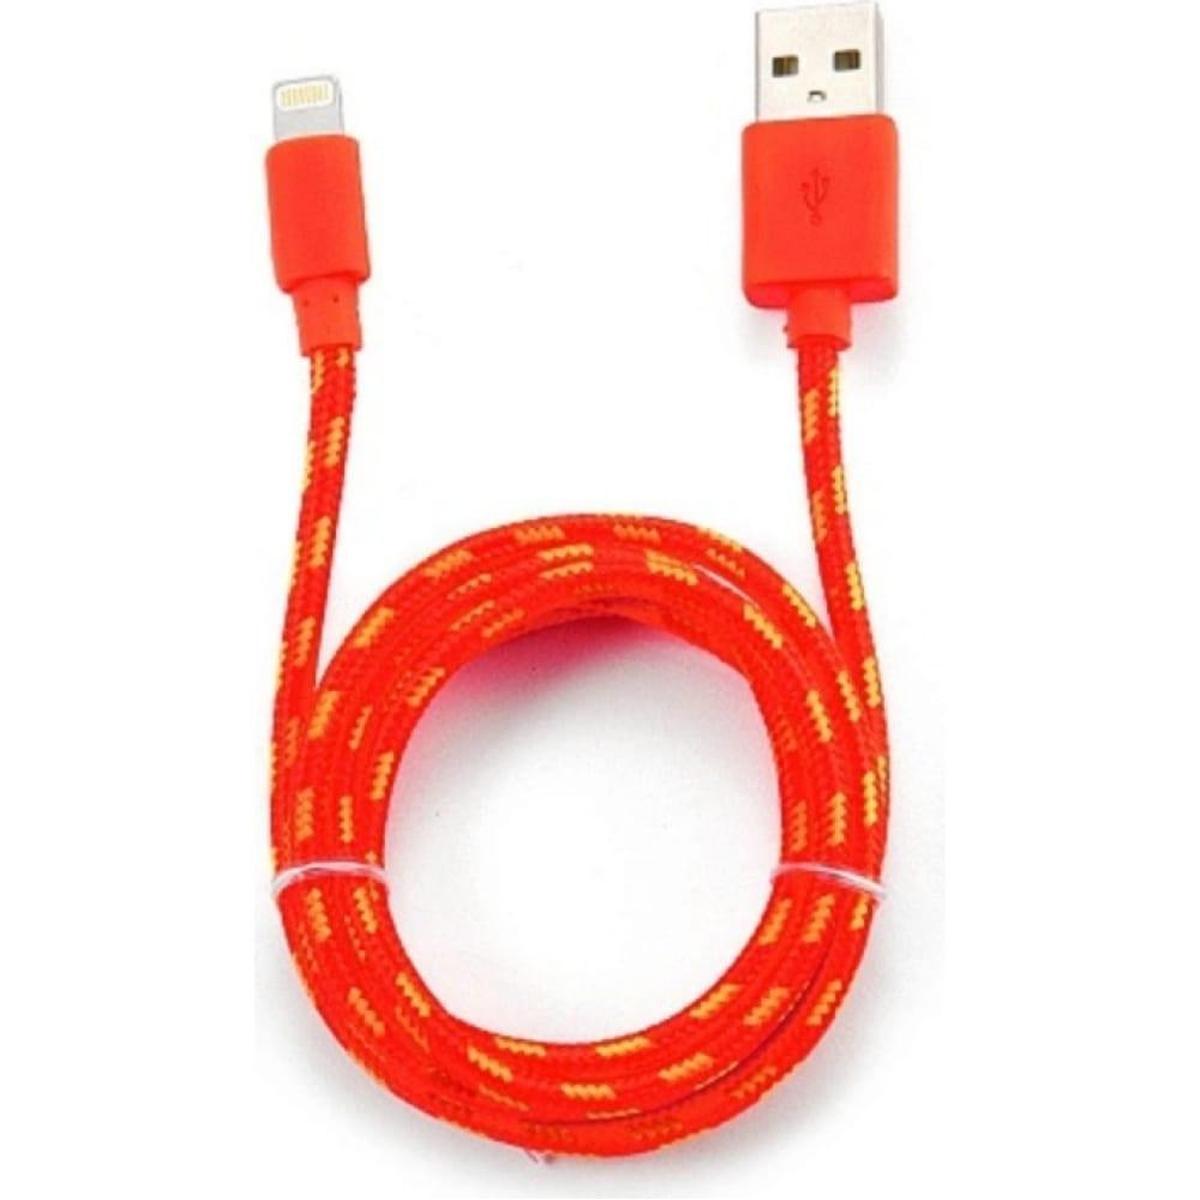 Шнур штекер USB A-штекер iPhone5/6/7, длина 1.0м, белого цвета, №3349 W шнур шт USB A-шт iPhone5/6/7\ 1,0м\кругл\\бел\